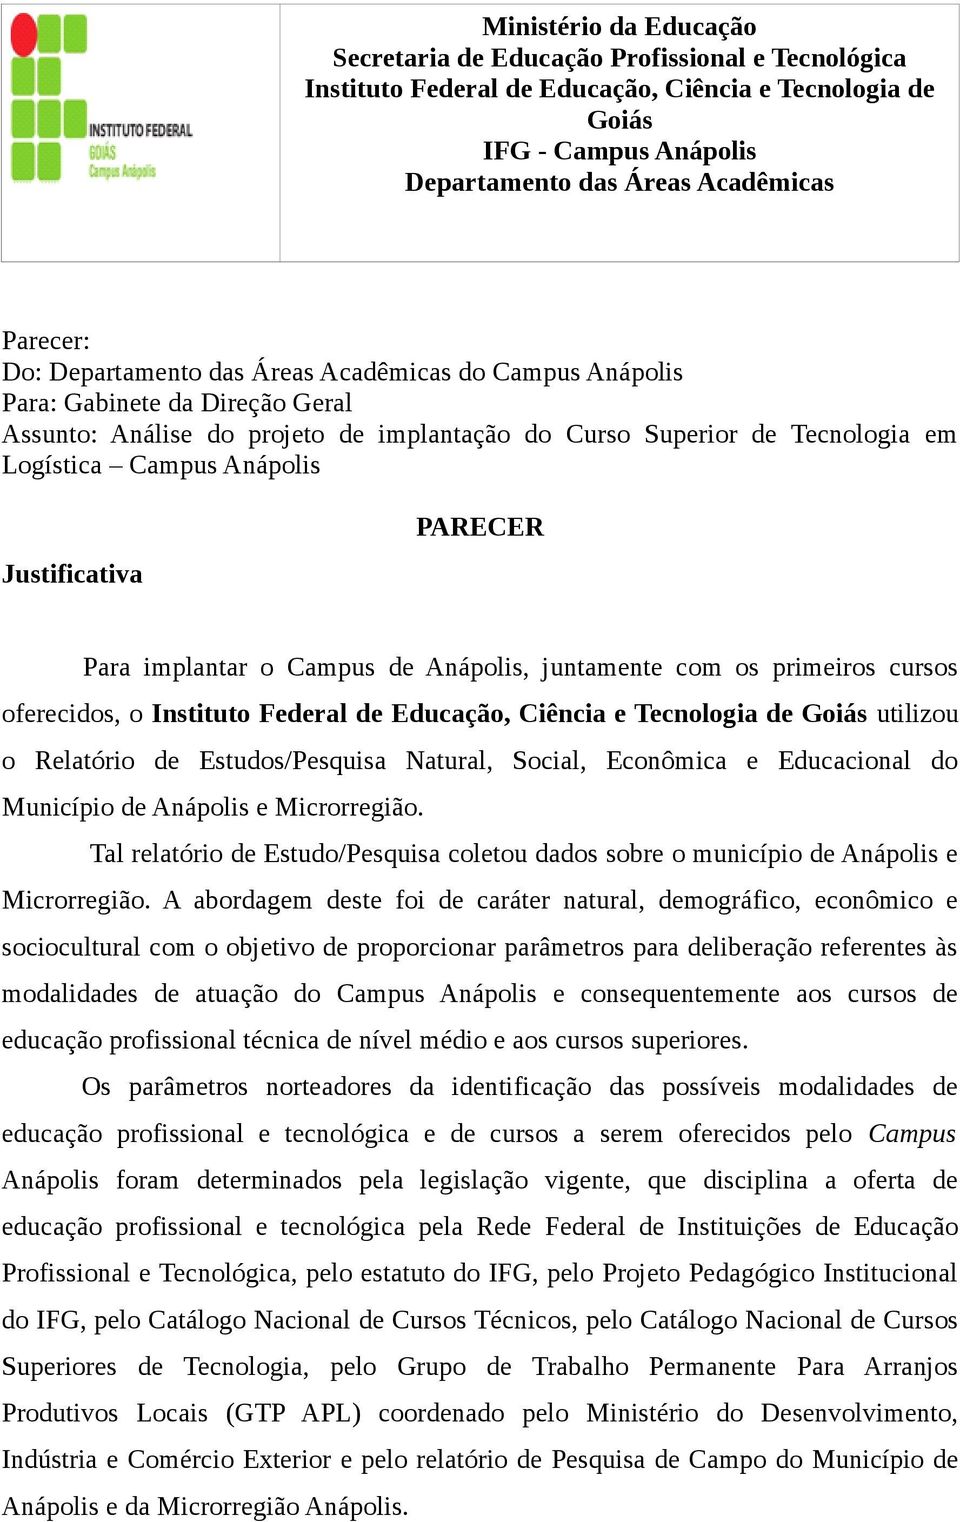 Justificativa PARECER Para implantar o Campus de Anápolis, juntamente com os primeiros cursos oferecidos, o Instituto Federal de Educação, Ciência e Tecnologia de Goiás utilizou o Relatório de